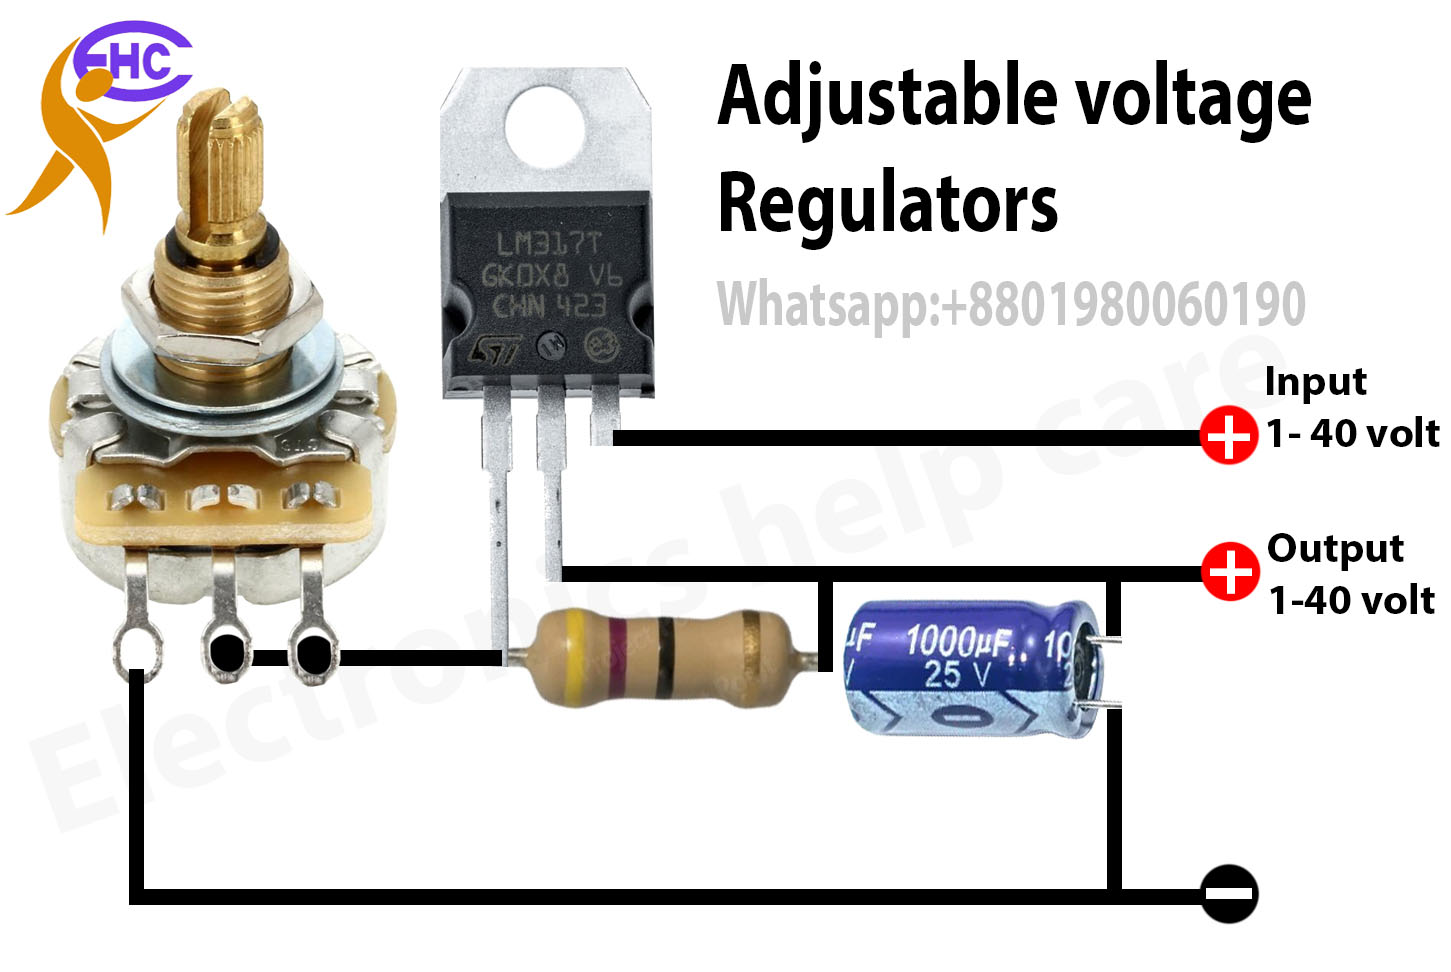 Adjustable voltage regulator using lm317 - Electronics Help Care